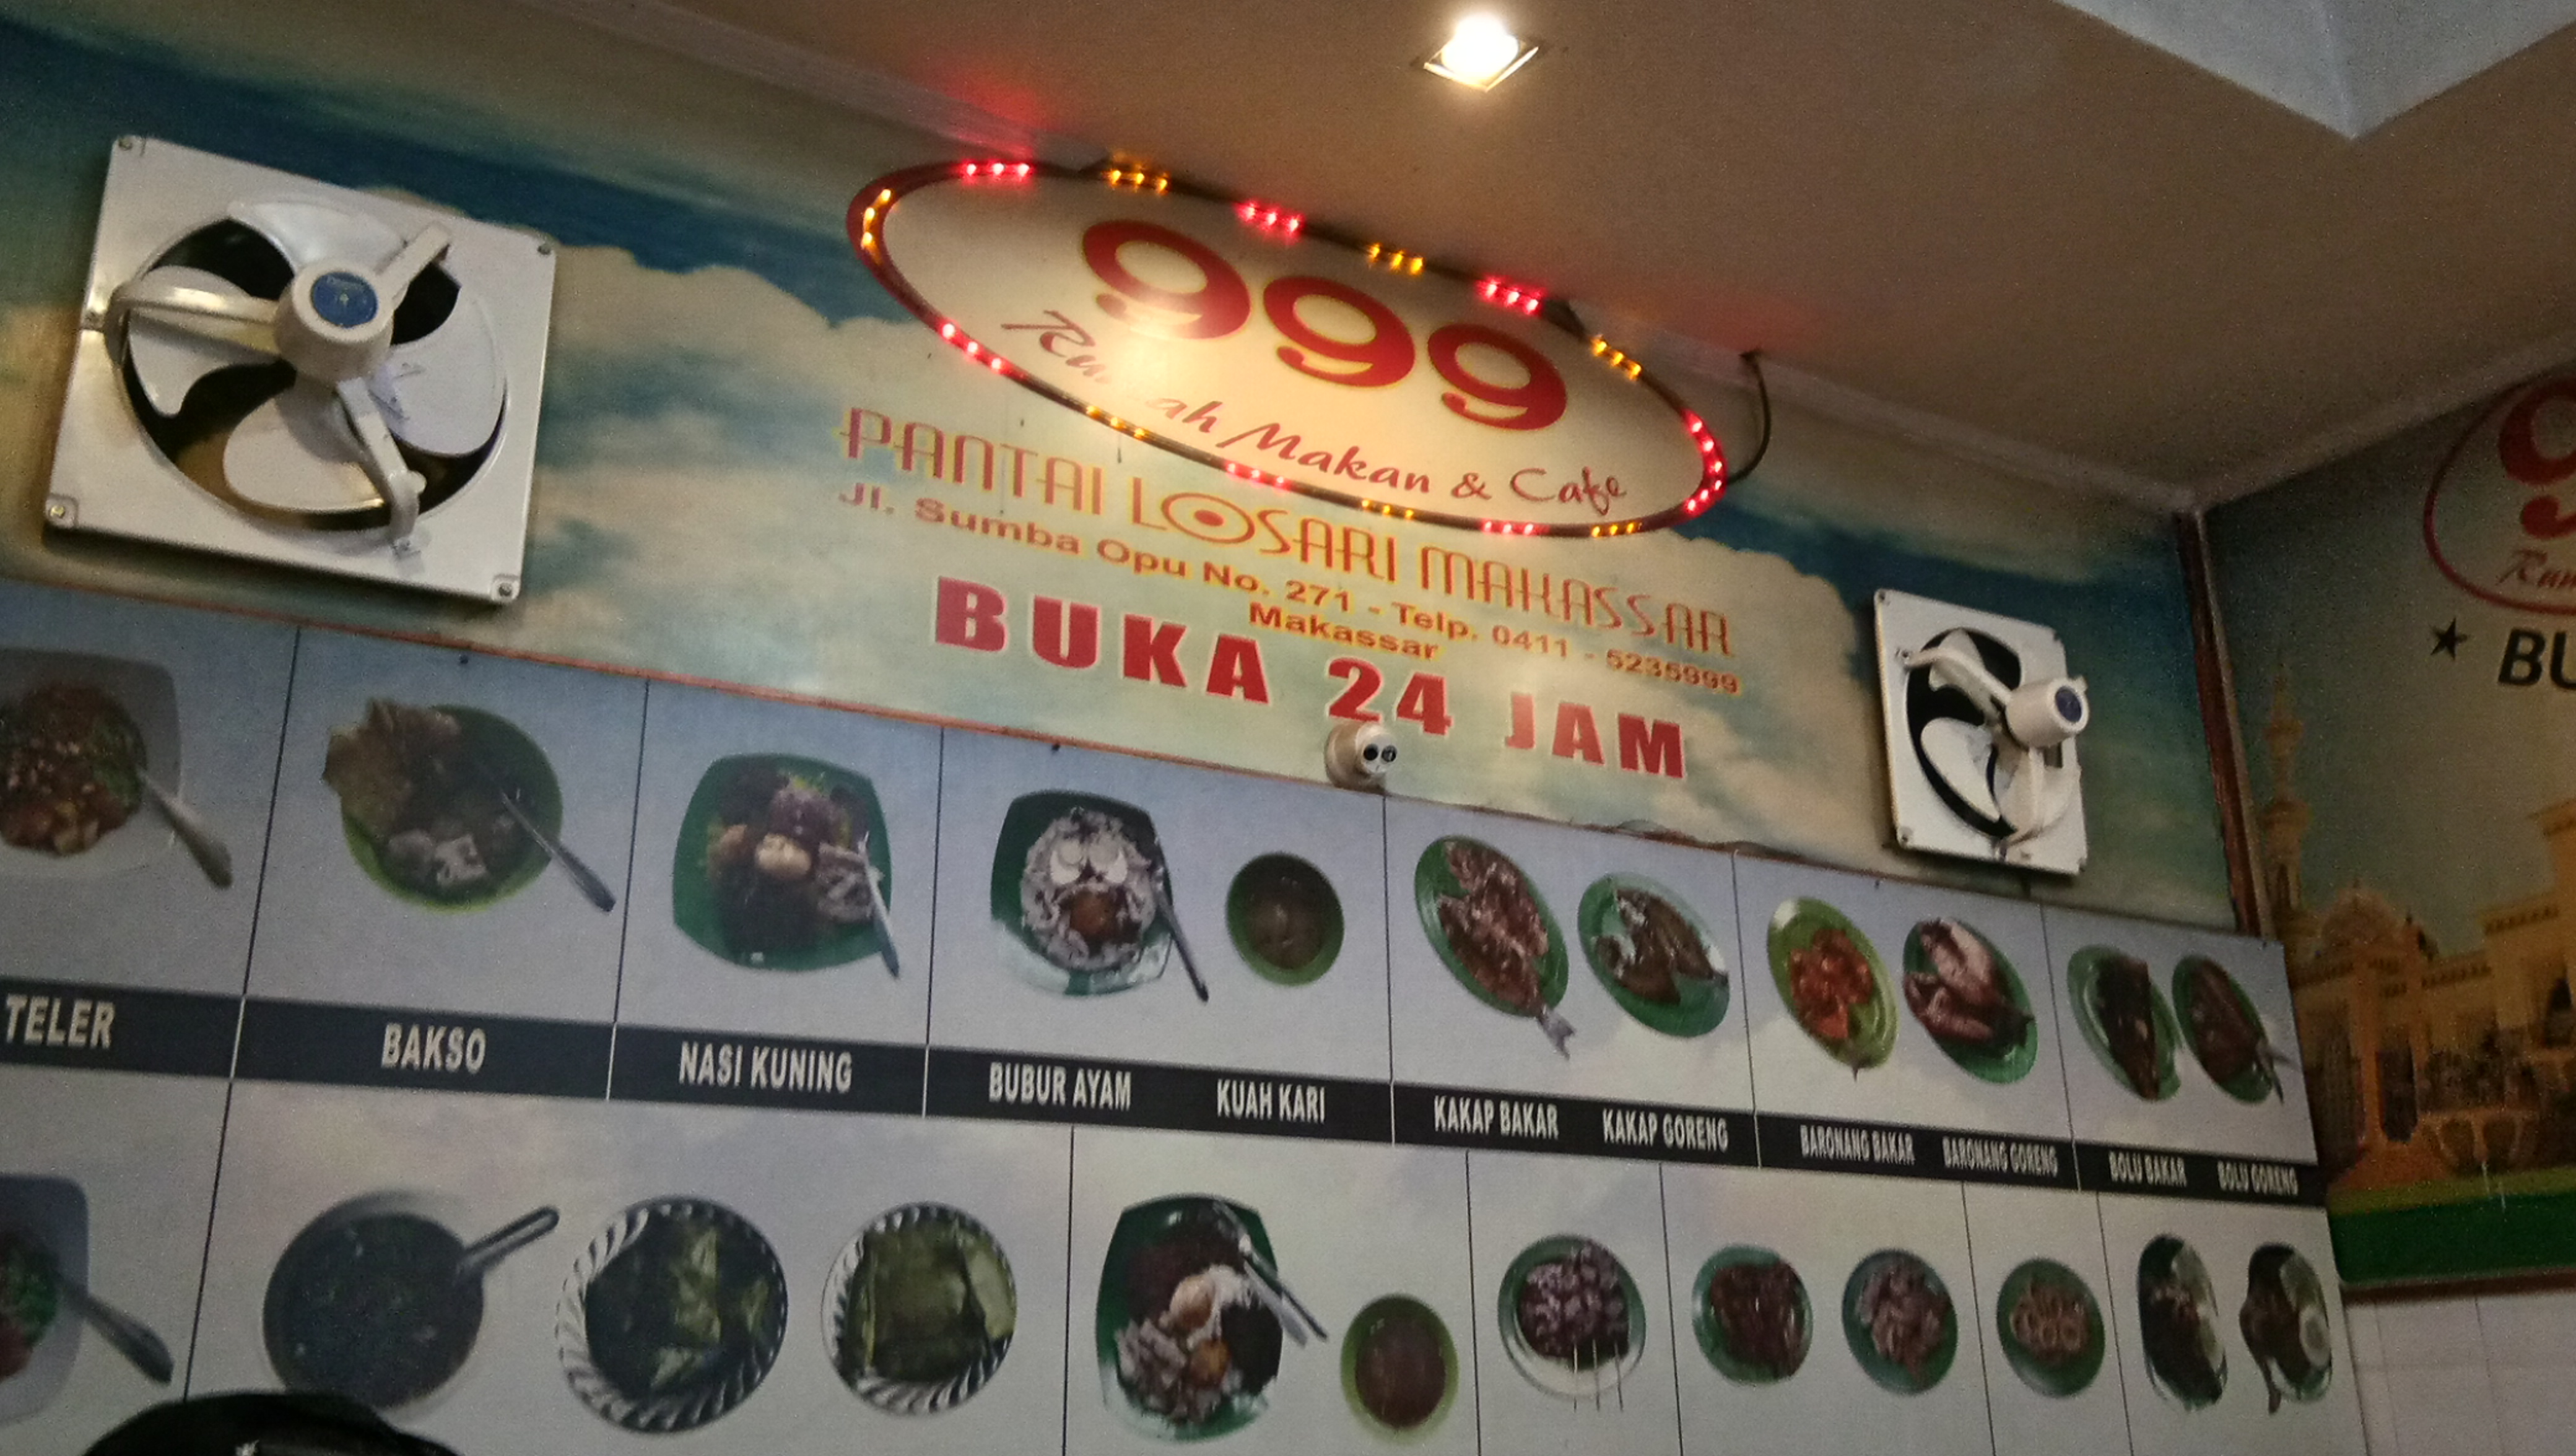 Rumah Makan dan Cafe 999 di Pantai Losari Makassar